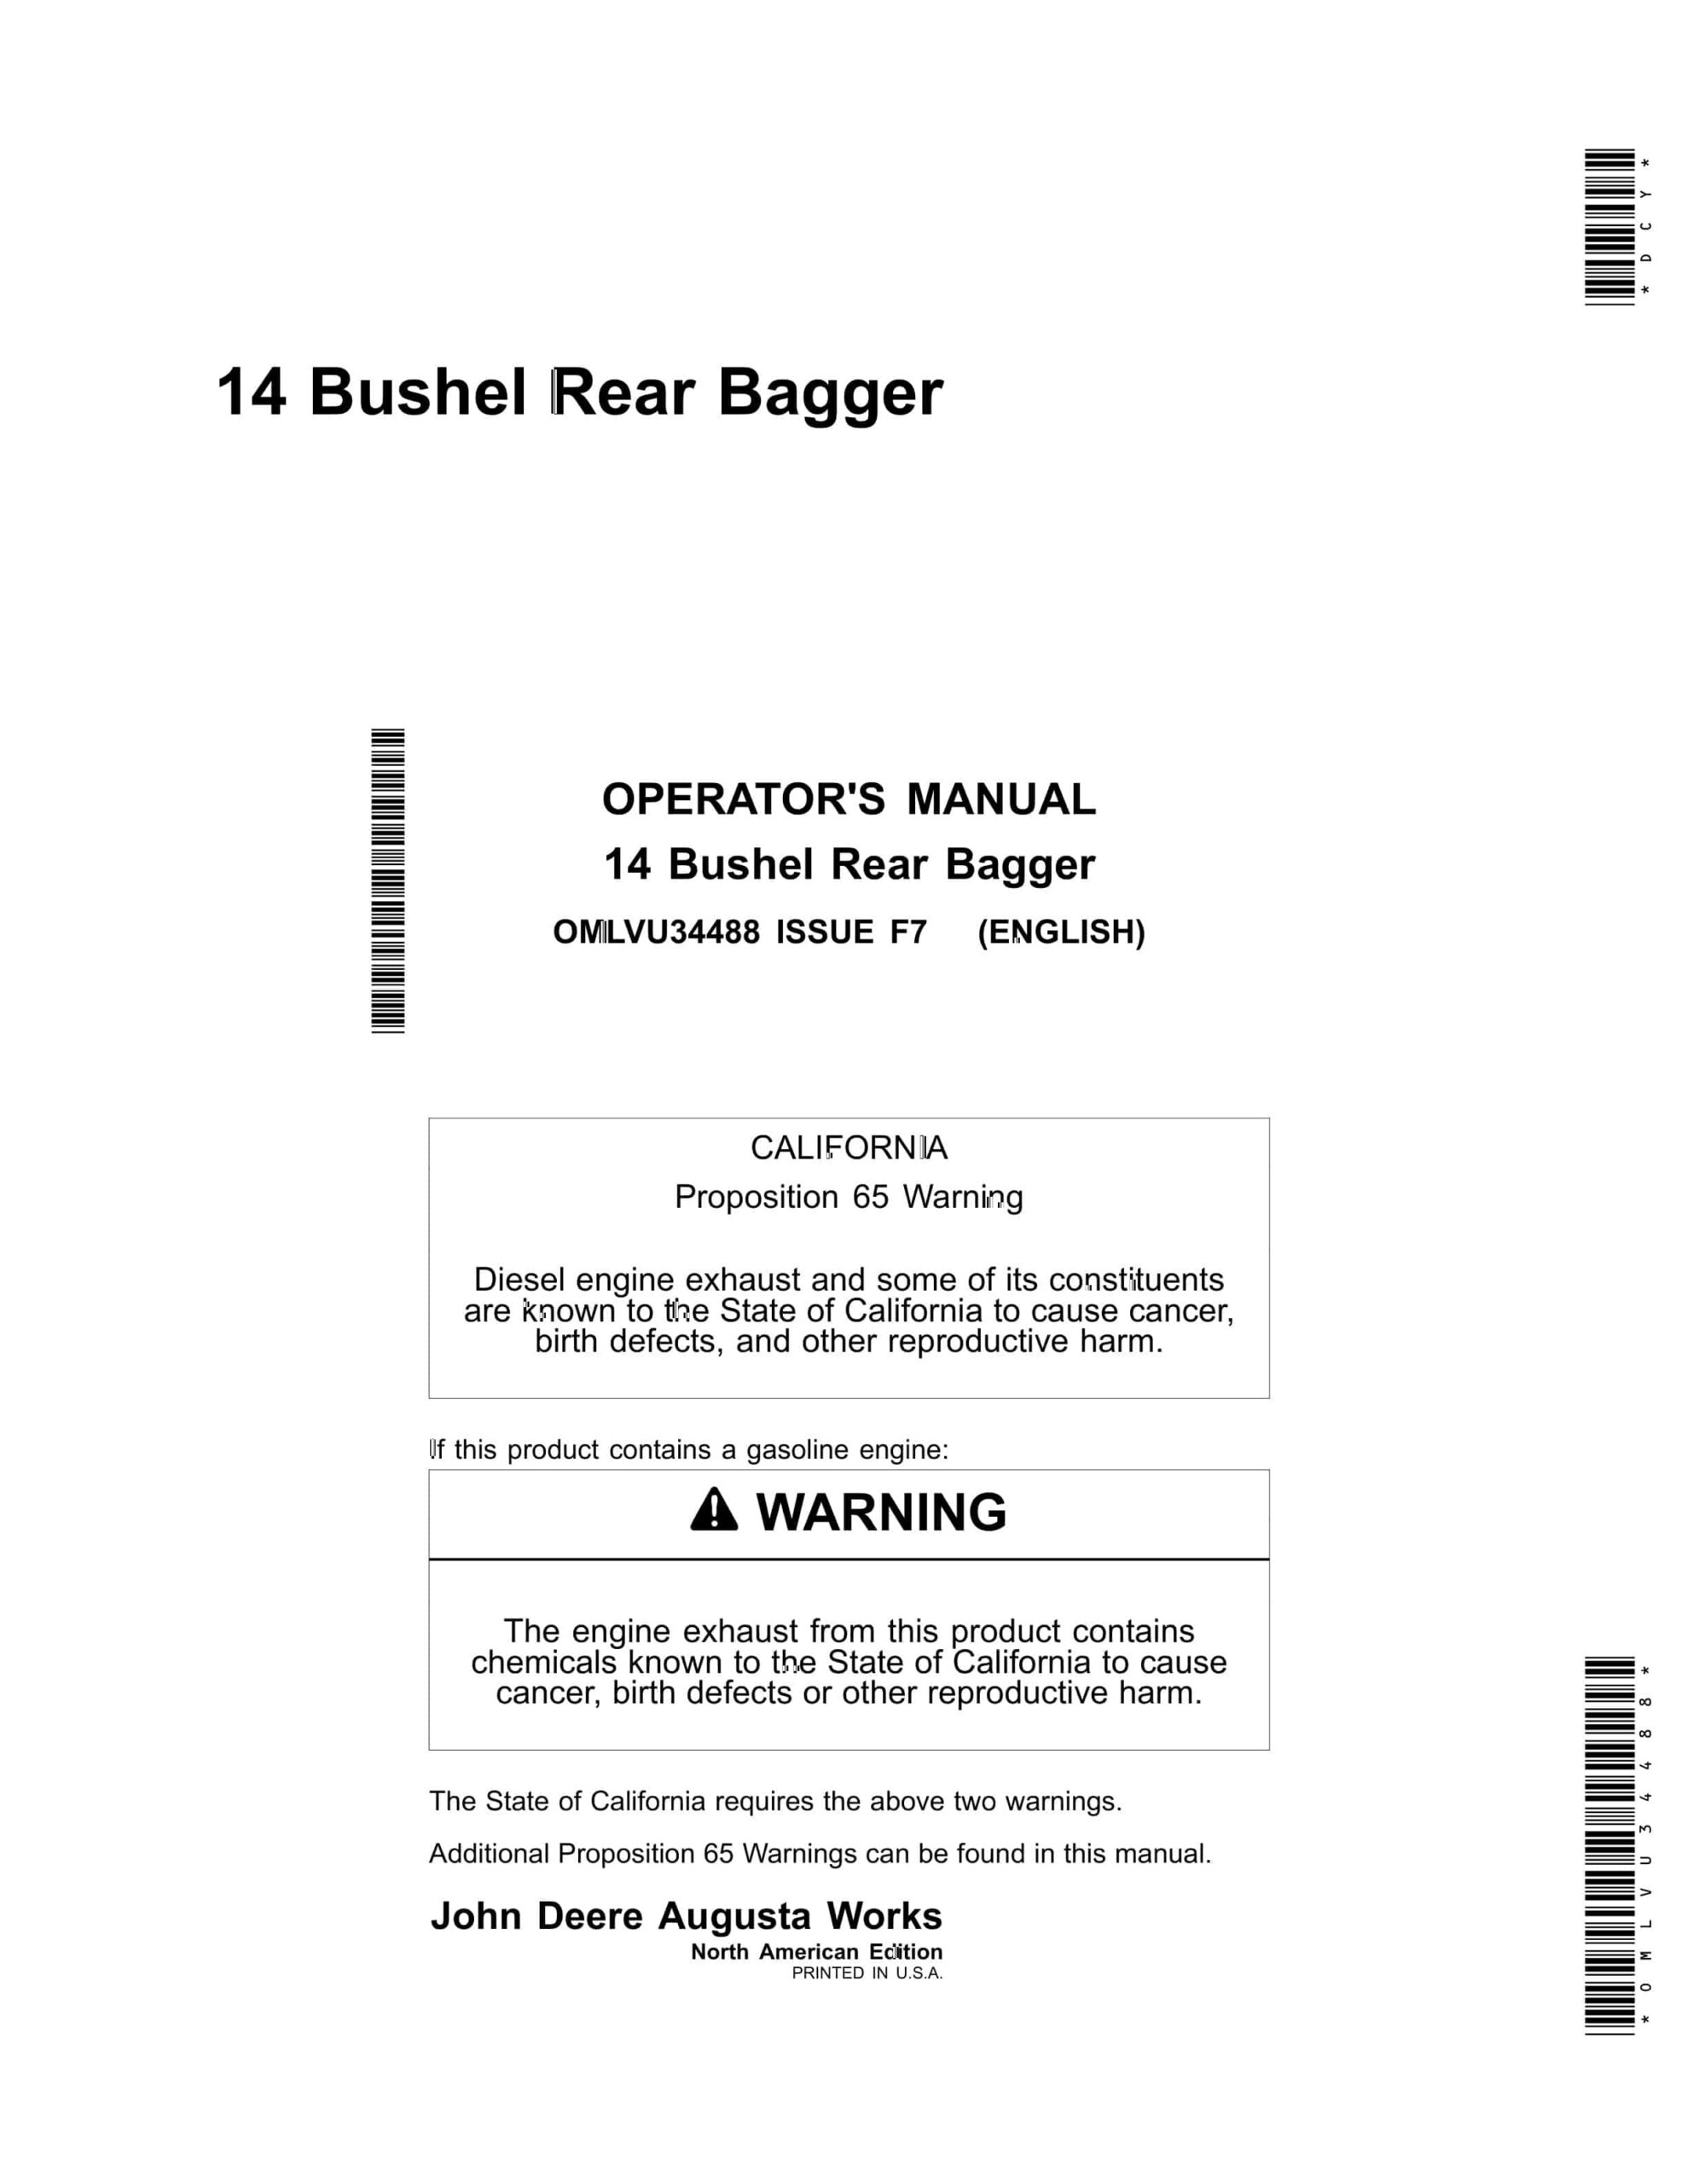 John Deere 14 Bushel Rear Bagger Operator Manual OMLVU34488-1